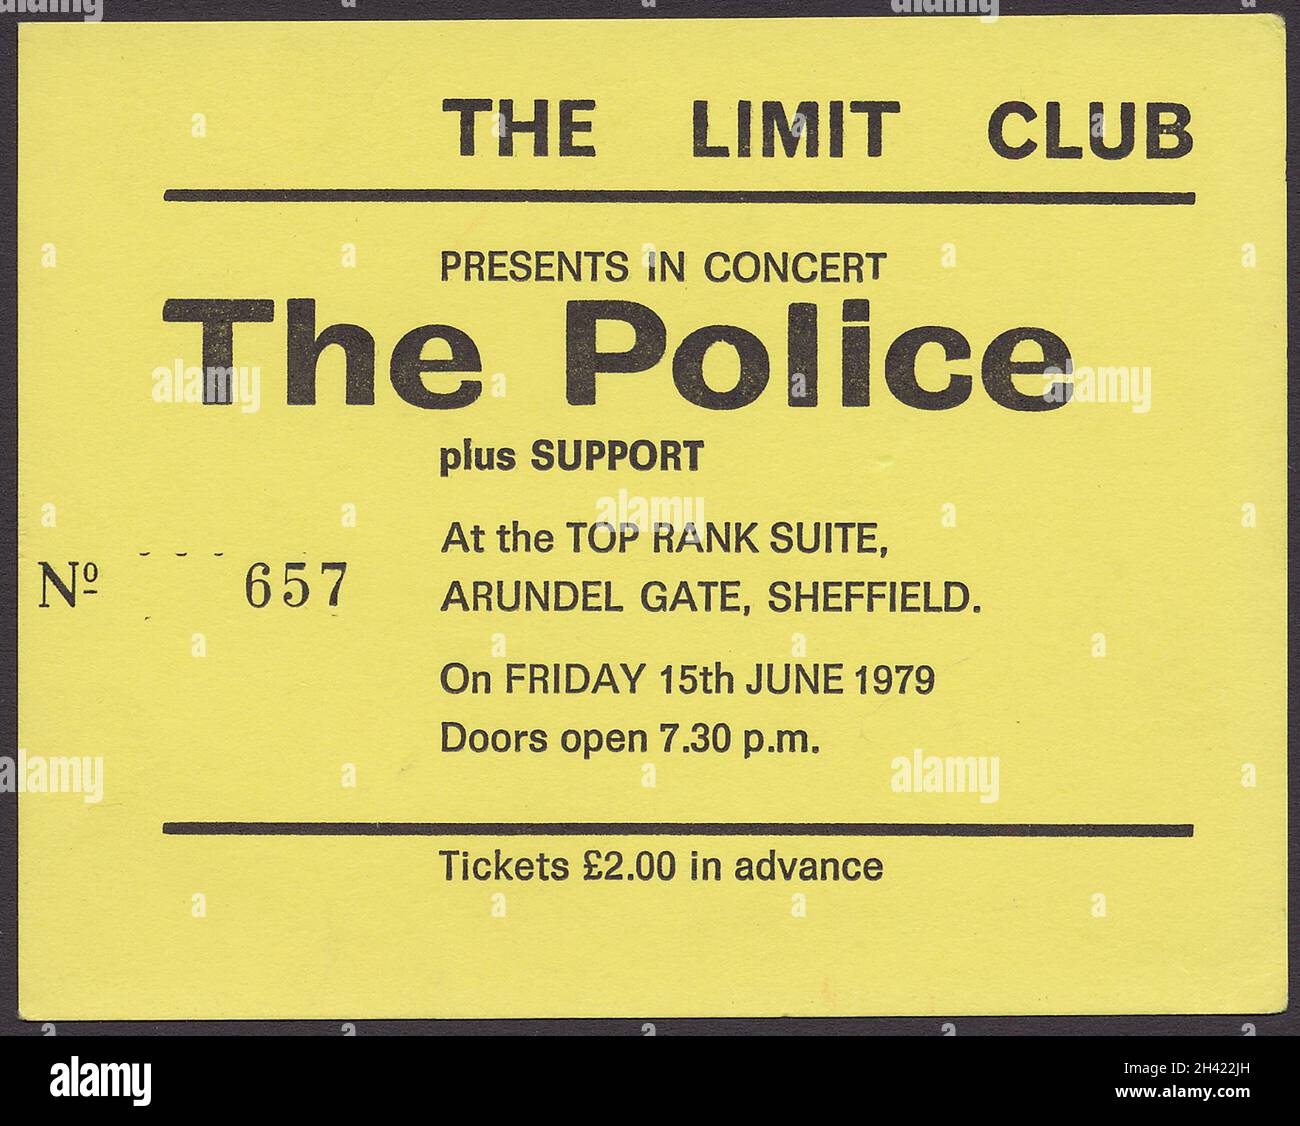 Die Polizei im Konzert, Ticket. Im Jahr 1979 haben Sie nur £2 (4) Dollar gekostet! Die Band trat im Juni 15 in der Top Rank Suite in Sheffield auf. 1979. Es handelt sich um eine seltene Sache, weil man sie bei der Einreise abgeben musste. Nummerierter und gedruckter Buchdruck in Schwarz auf gelber Karte. Die Band stand kurz vor Ruhm und das Konzert wurde vom Limit Club gefördert, aber die Band war bereits zu groß, um dort zu spielen, daher der Venue Switch. Die Unterstützung waren die ursprünglichen Krämpfe, die nicht auf dem Ticket erwähnt wurden. Ich habe Fotos von der Show. Stockfoto